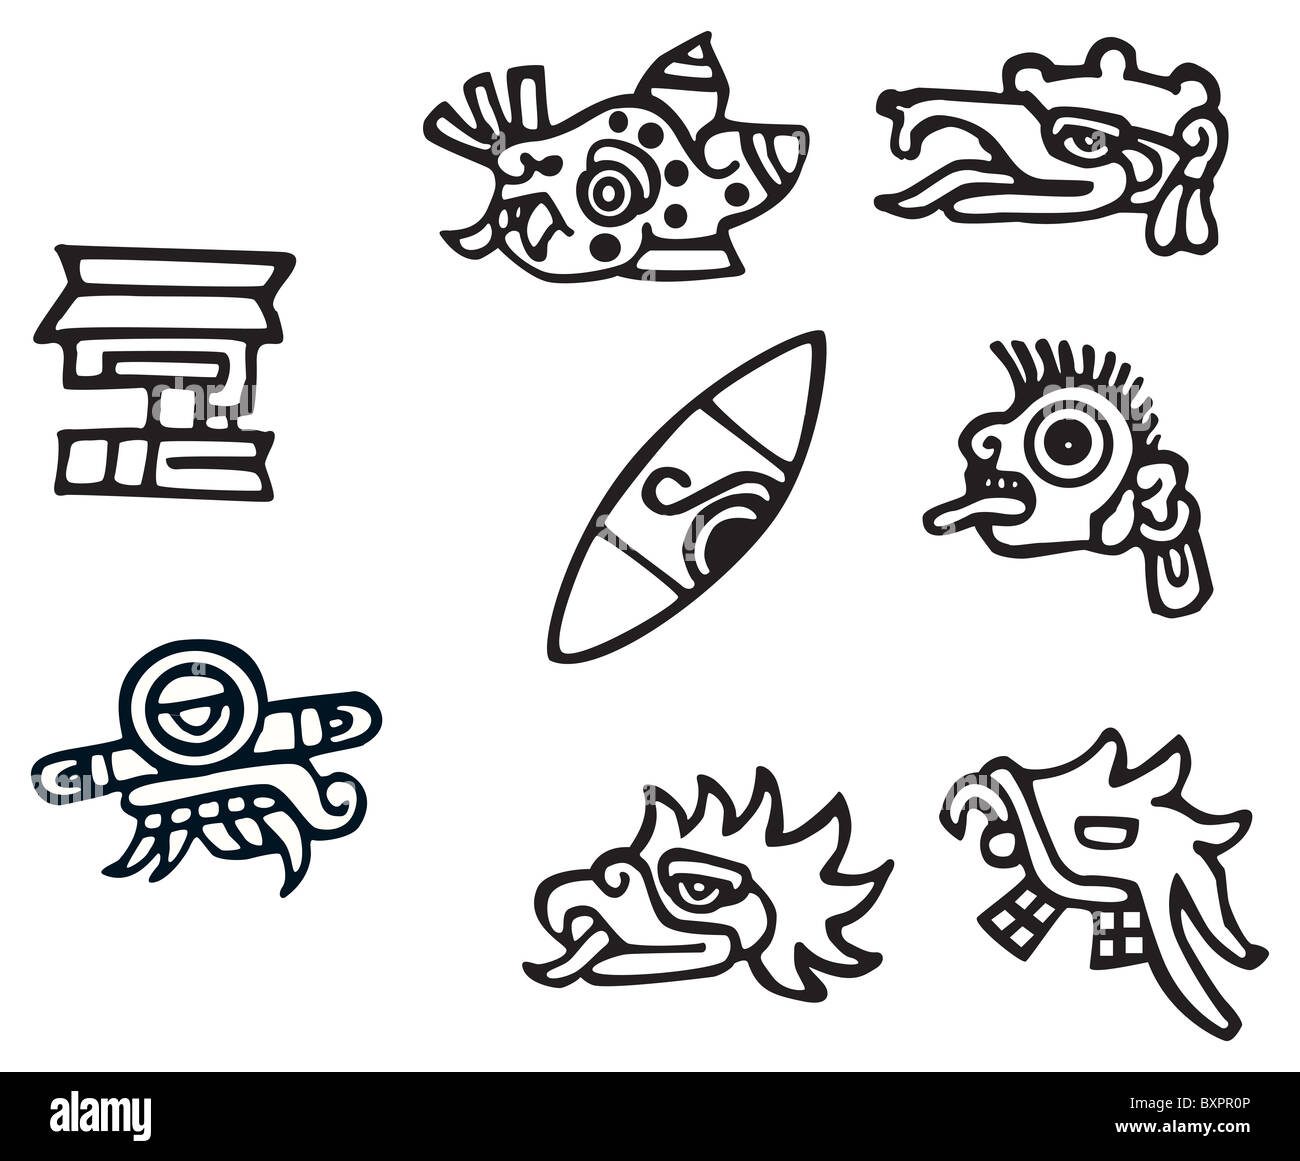 Symboles mayas, de grands dessins pour tatouages Banque D'Images